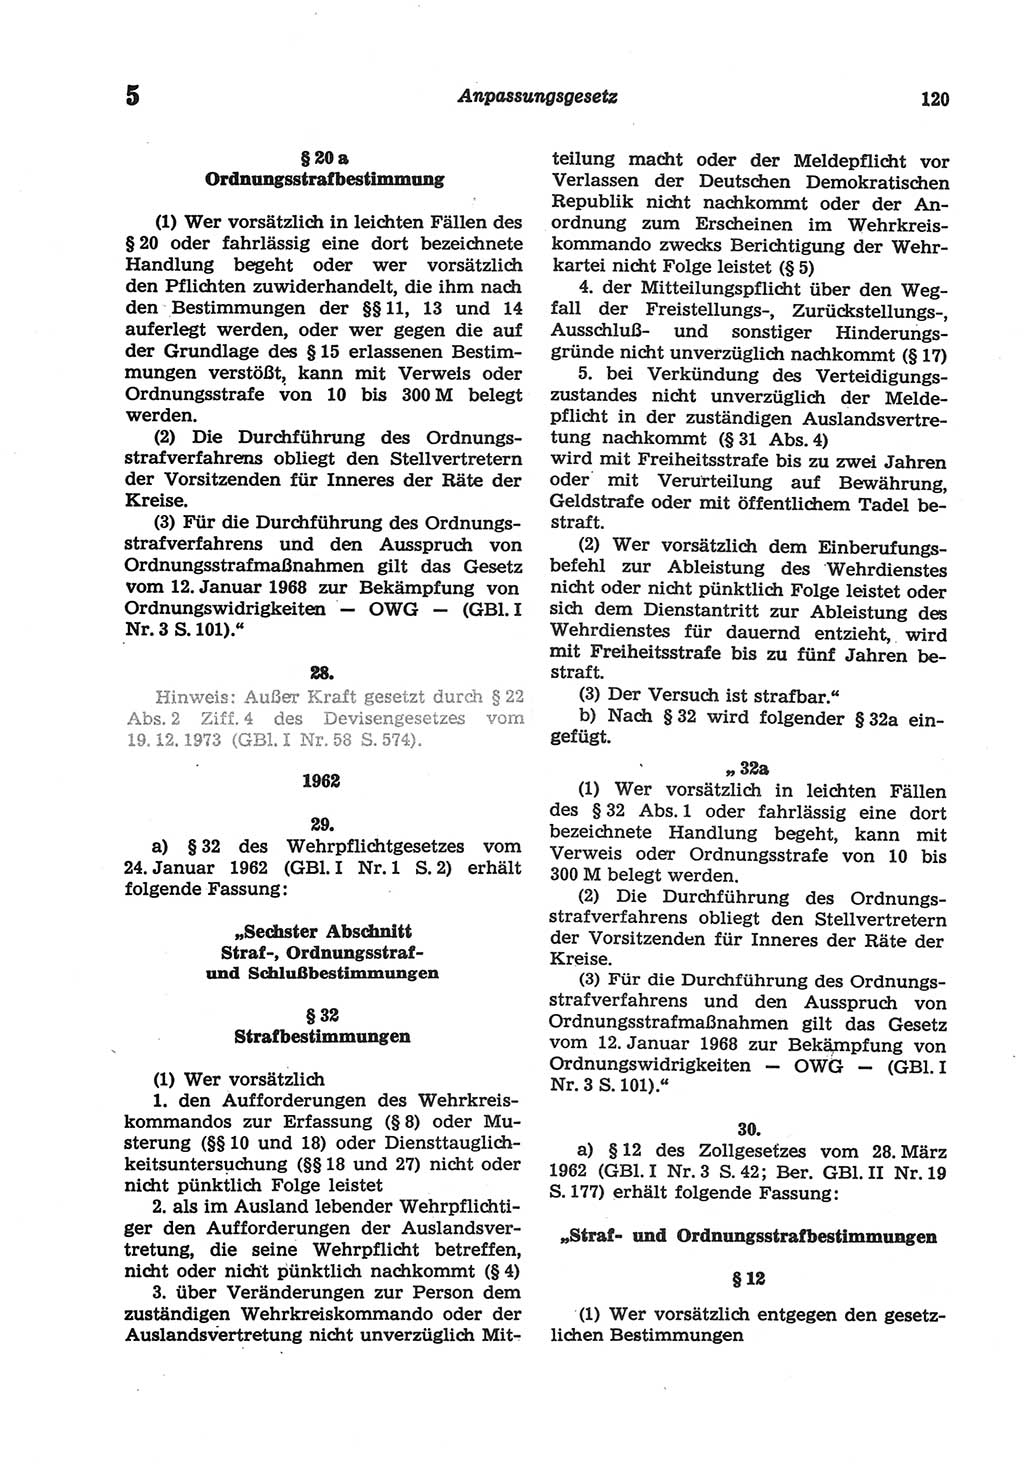 Strafgesetzbuch (StGB) der Deutschen Demokratischen Republik (DDR) und angrenzende Gesetze und Bestimmungen 1977, Seite 120 (StGB DDR Ges. Best. 1977, S. 120)